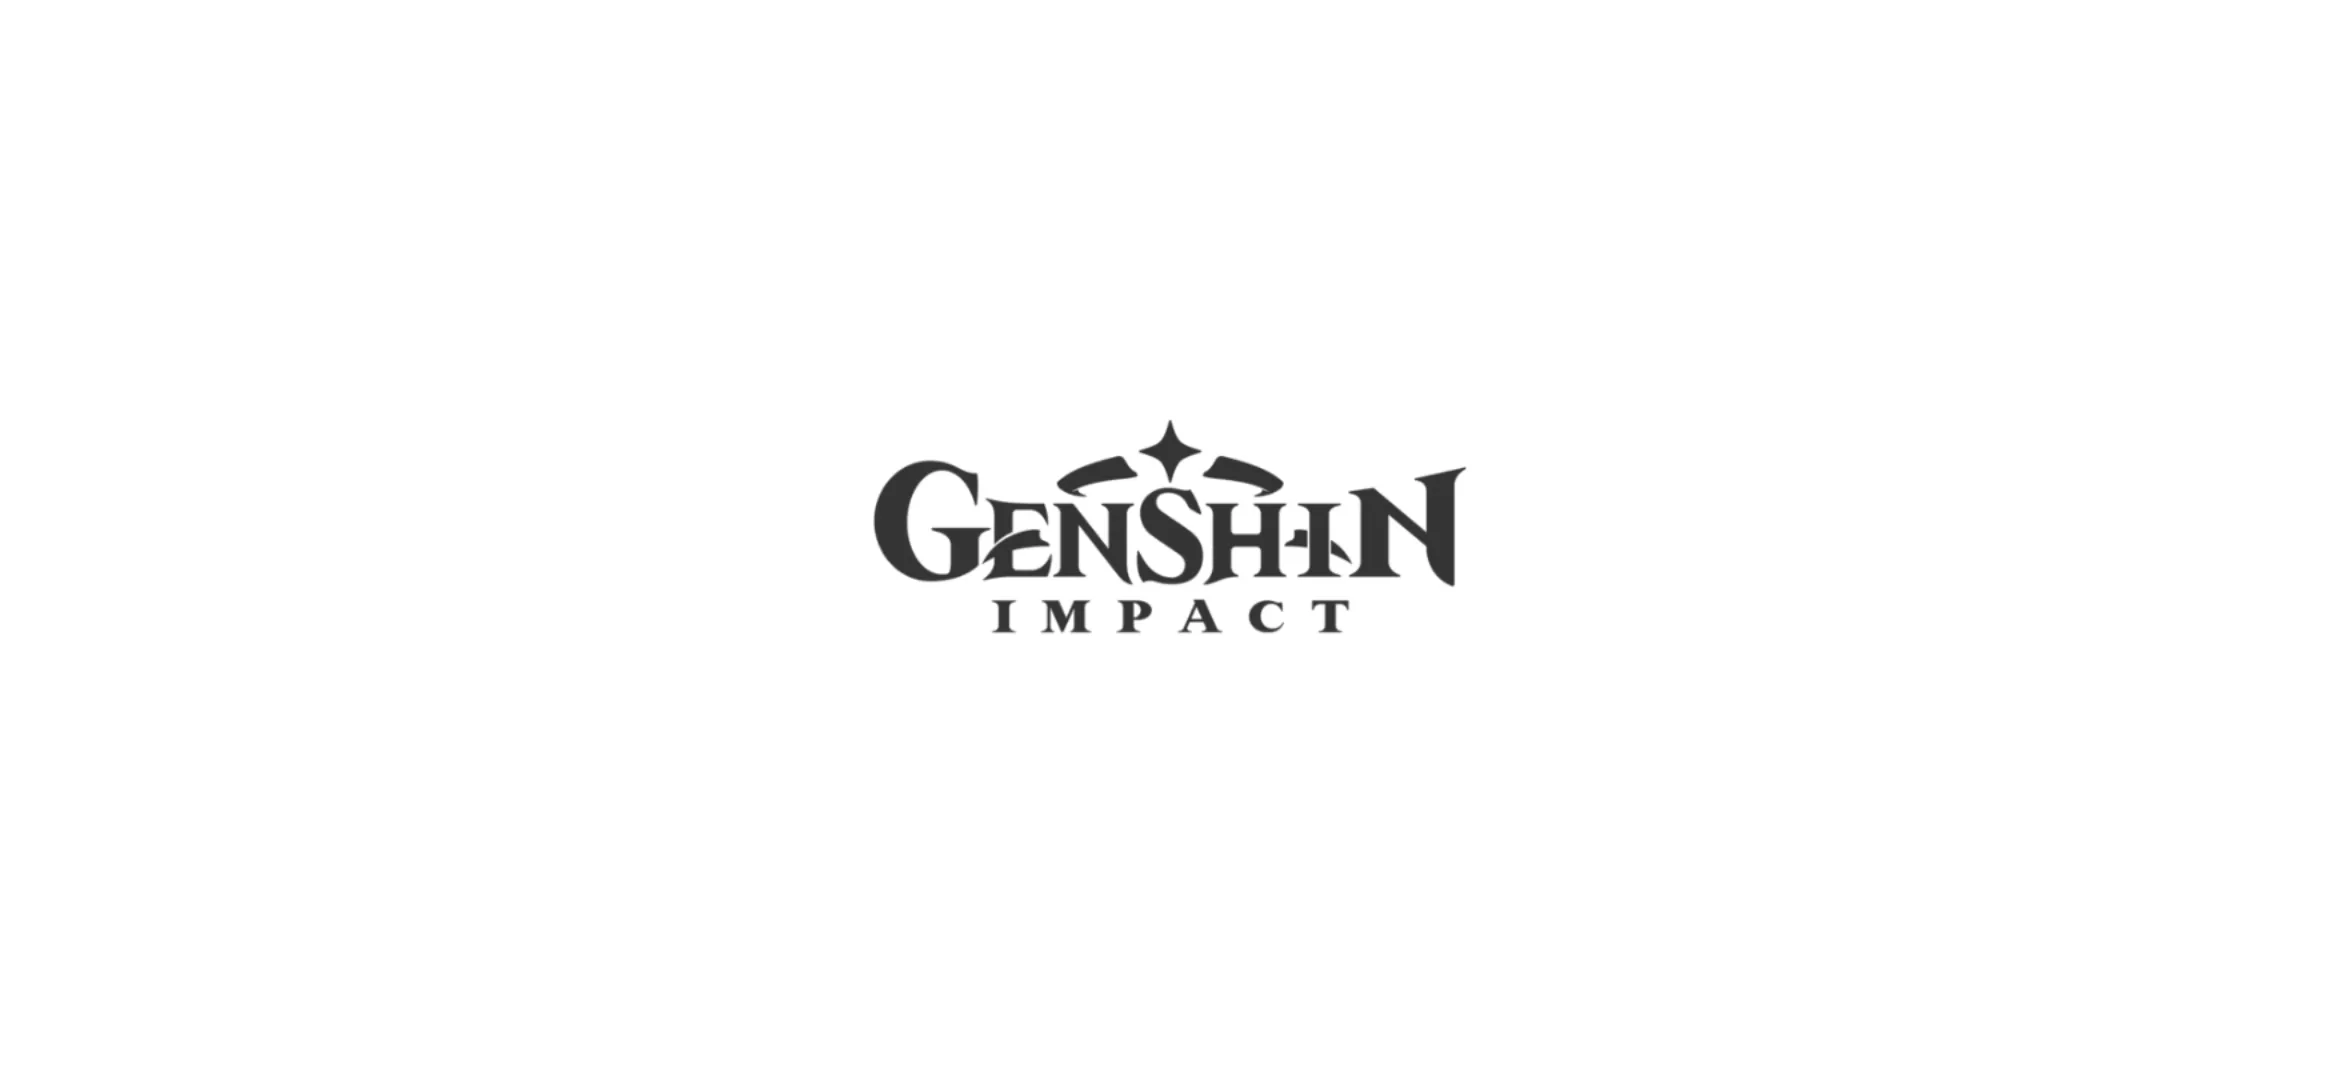 Телеграм канал геншин. Веласкес портрет инфанты. Михойо Геншин. Геншин лого. Логотип ген шин Импакт.